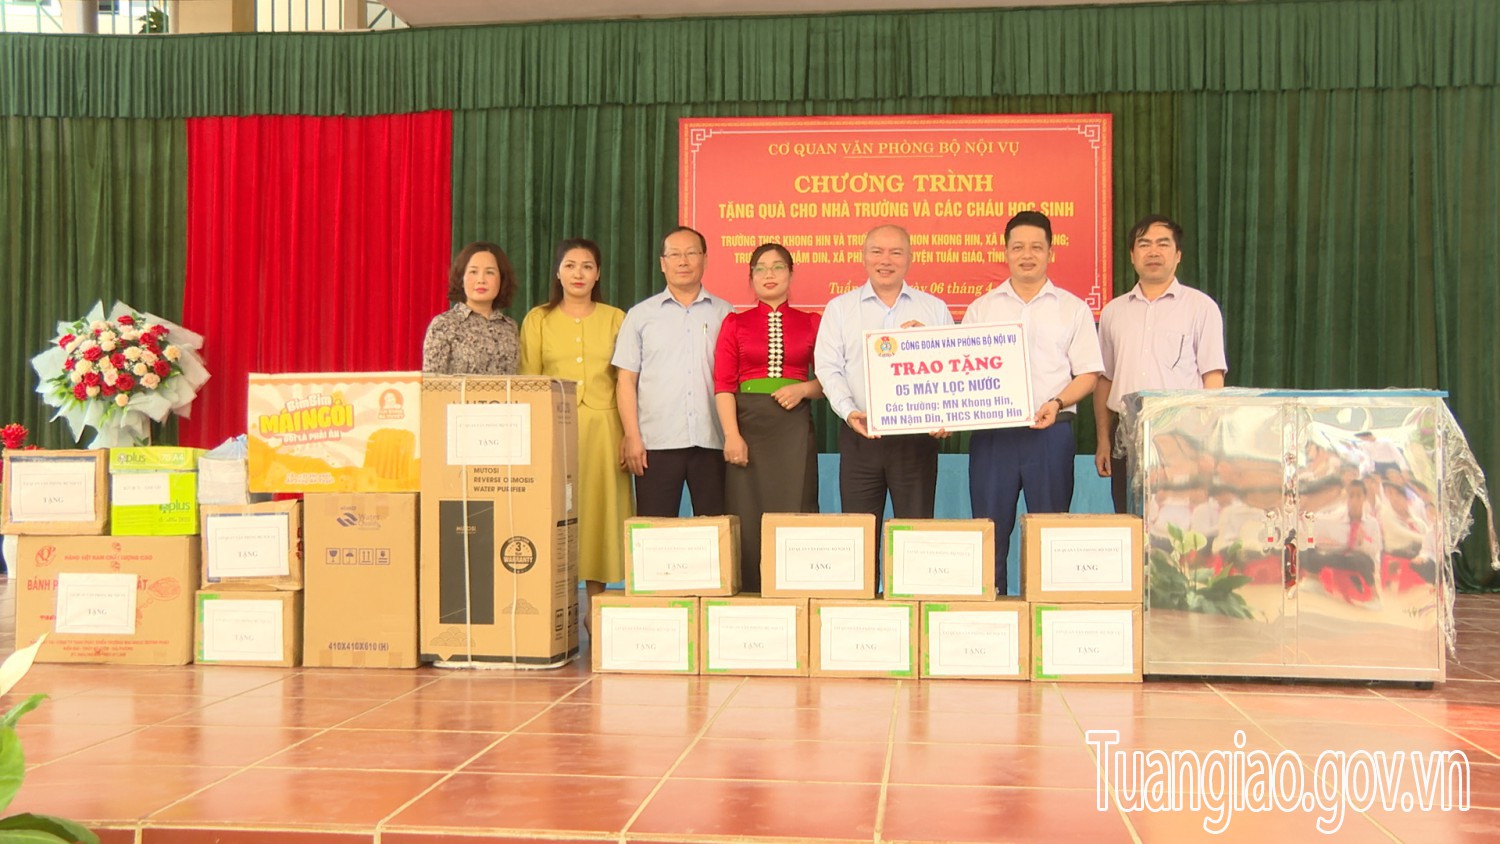 Cơ quan Văn phòng Bộ Nội vụ  tổ chức Chương trình tặng quà cho nhà trường và học sinh huyện Tuần Giáo